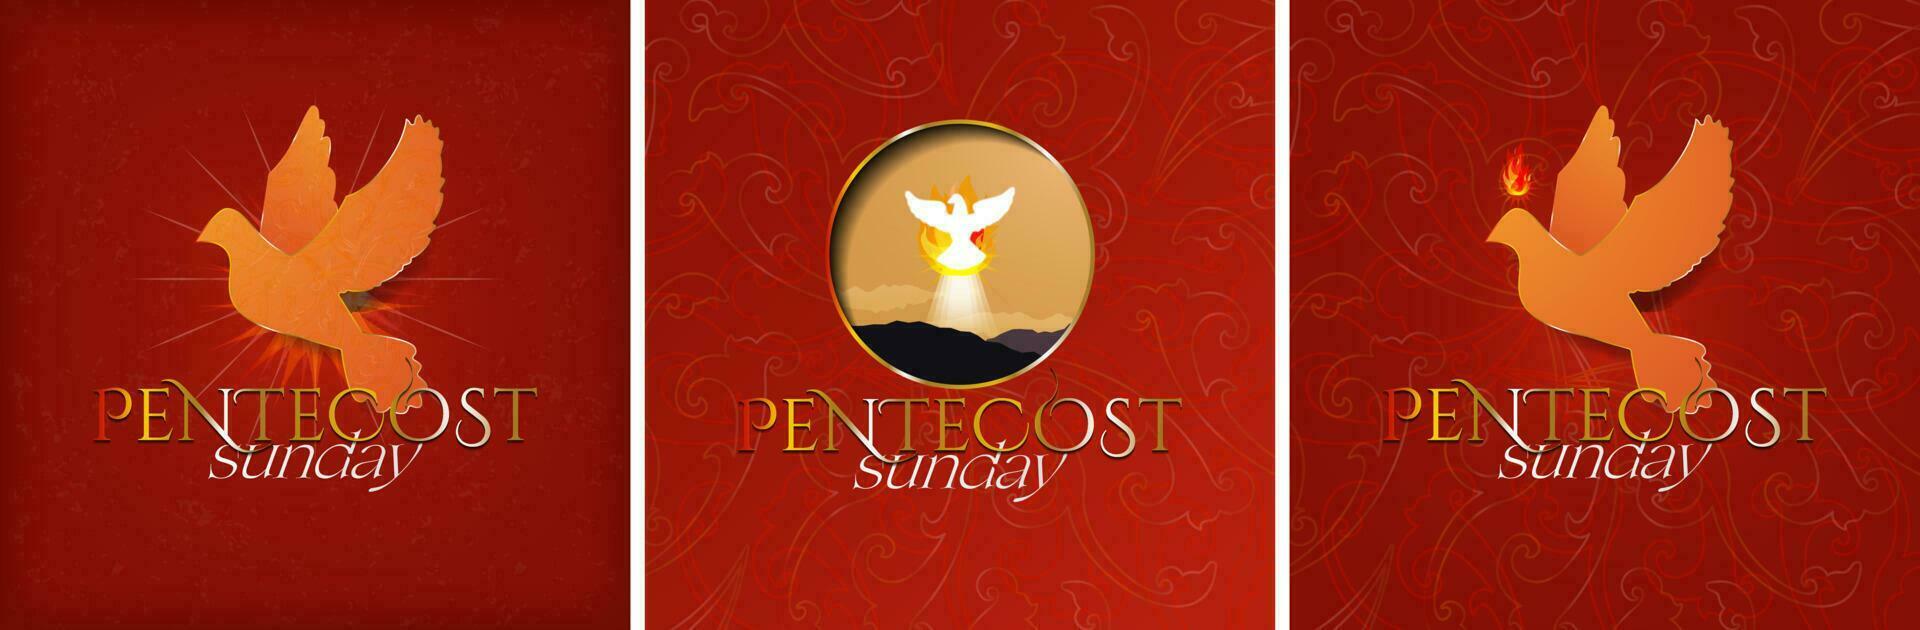 Pentecostés domingo póster colocar. hermosa paloma silueta con de Pentecostés fuego y ligero. Pentecostés icono en rojo antecedentes. eps 10 vector